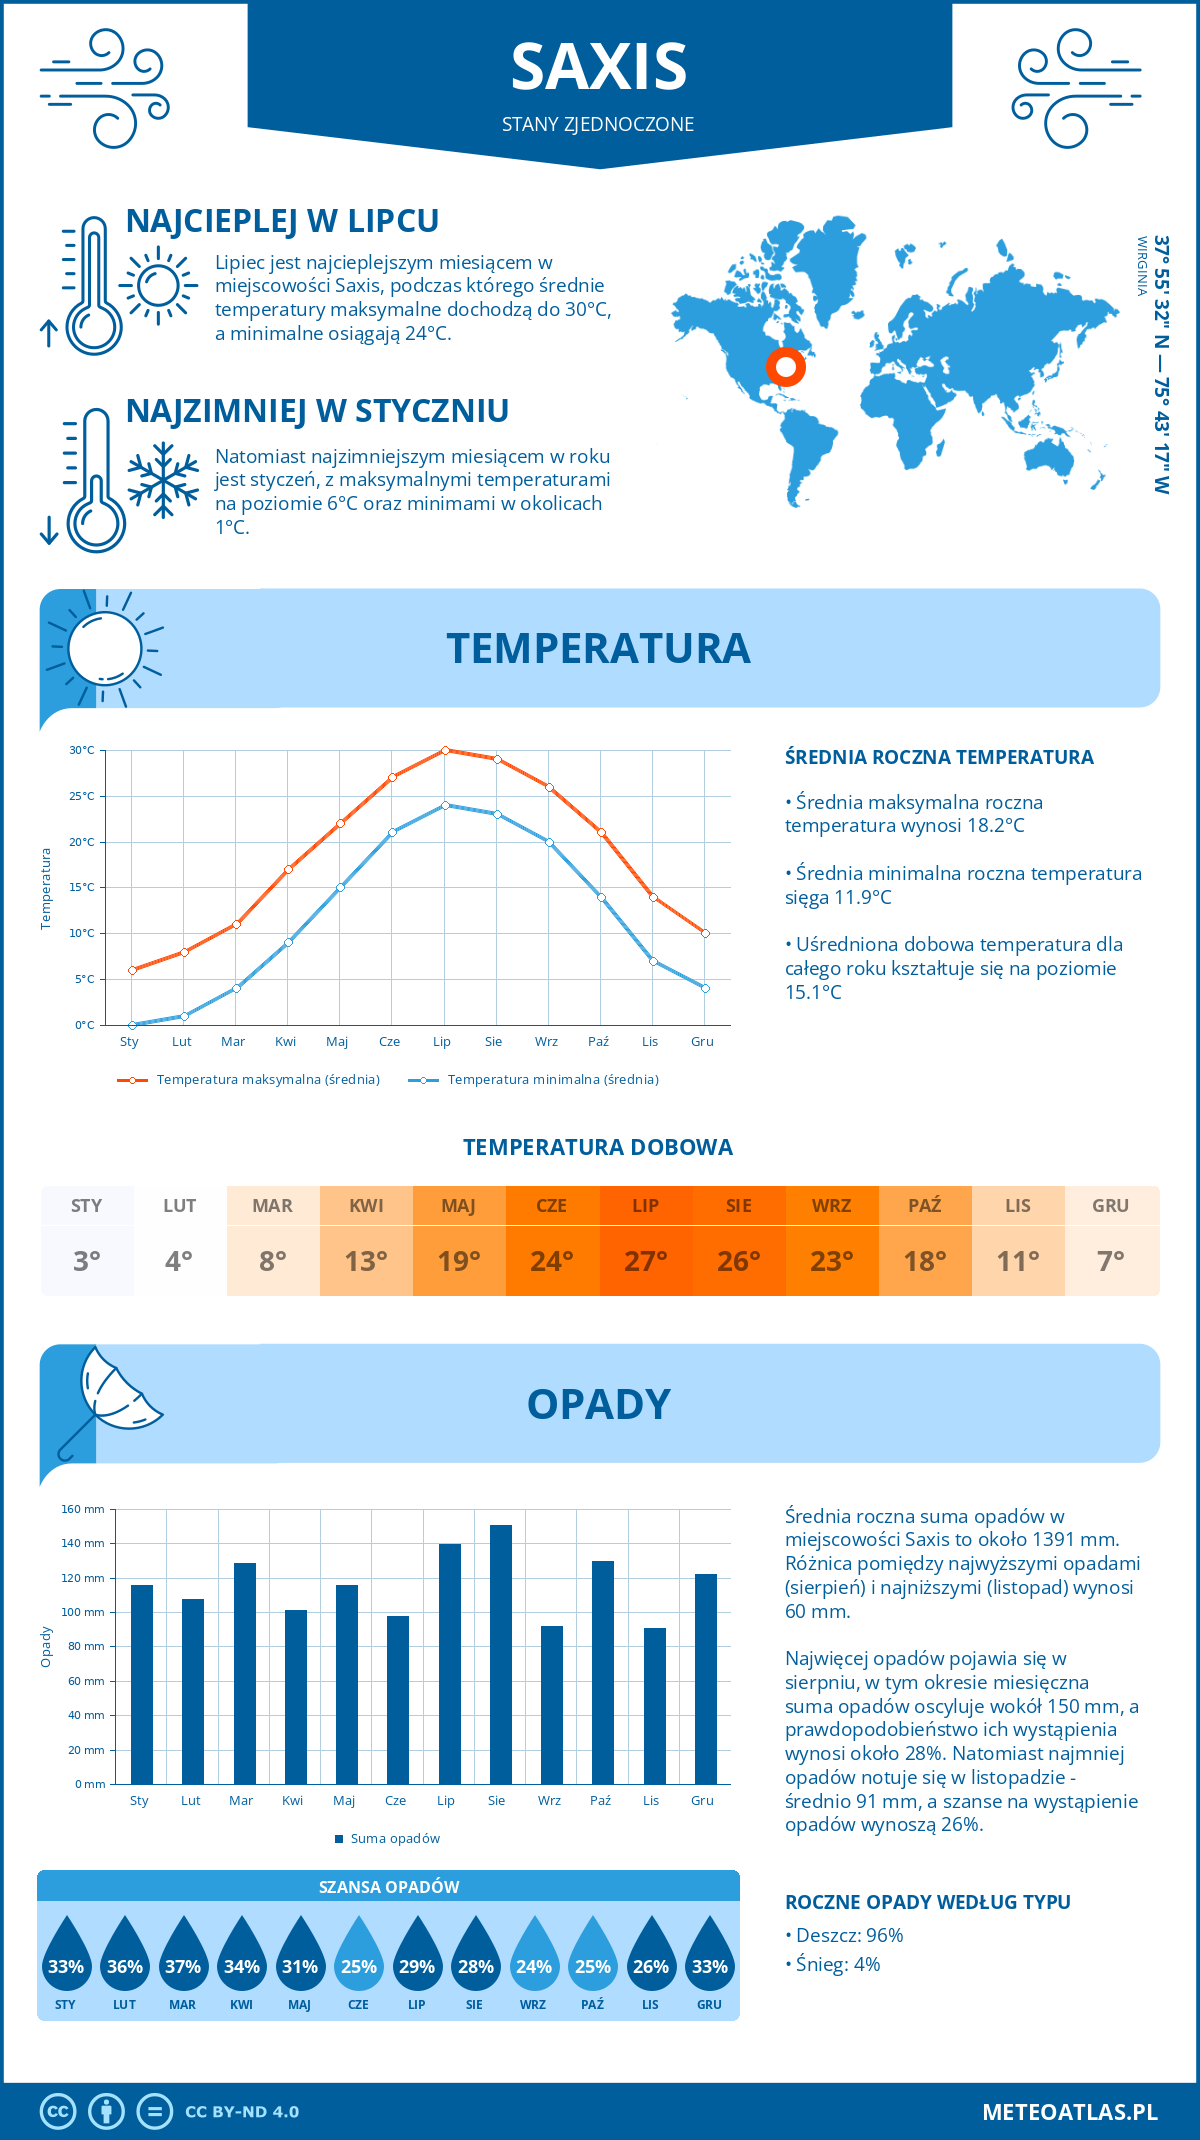 Pogoda Saxis (Stany Zjednoczone). Temperatura oraz opady.